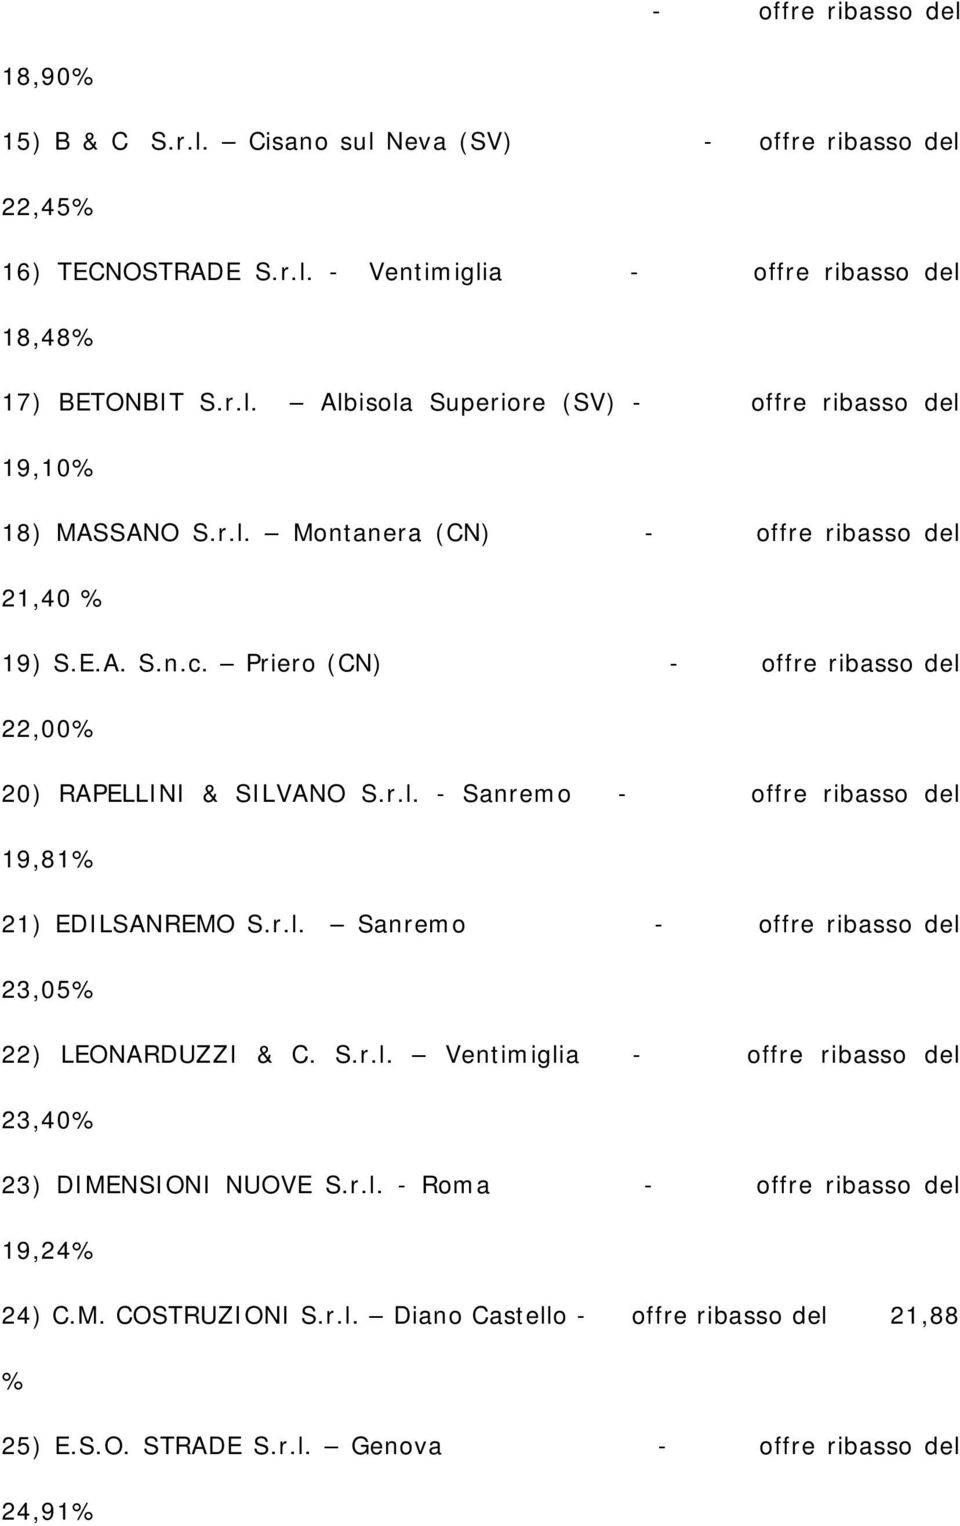 r.l. Sanremo - offre ribasso del 23,05% 22) LEONARDUZZI & C. S.r.l. Ventimiglia - offre ribasso del 23,40% 23) DIMENSIONI NUOVE S.r.l. - Roma - offre ribasso del 19,24% 24) C.M. COSTRUZIONI S.